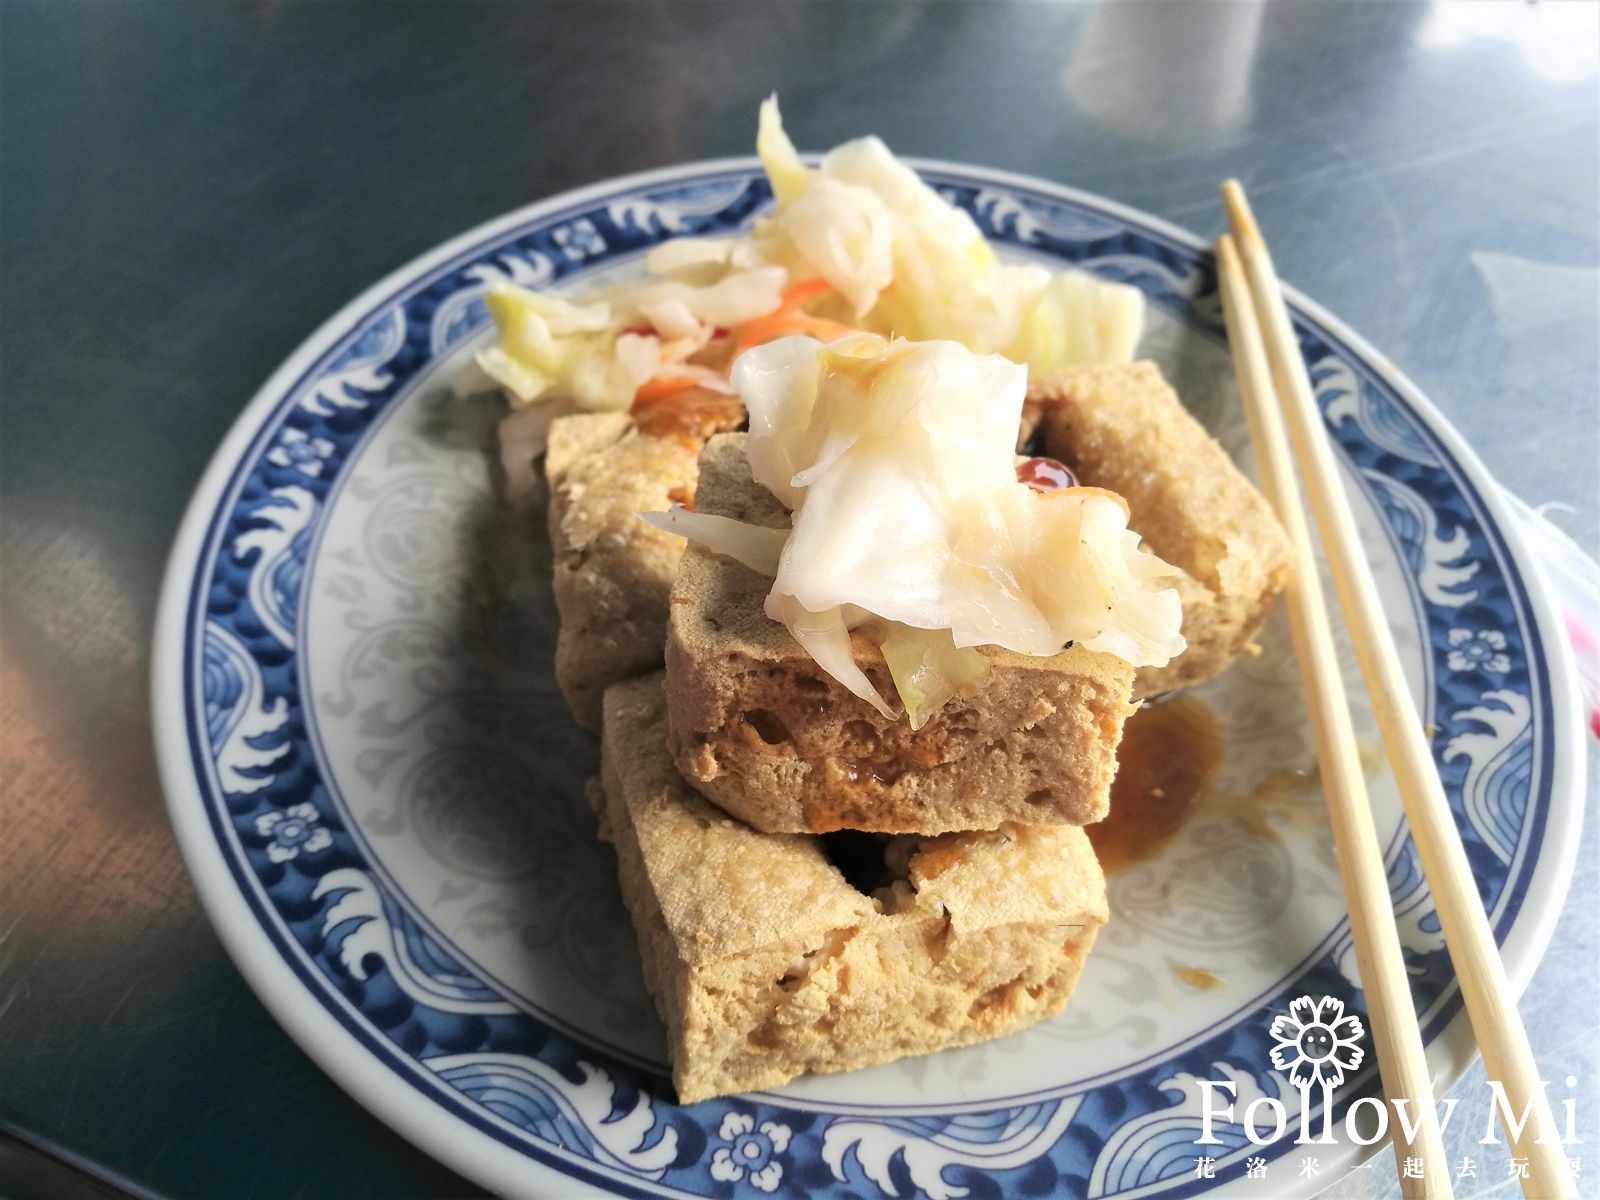 台中美食,東區,林記臭豆腐,自由路臭豆腐,花蓮瑞穗臭豆腐